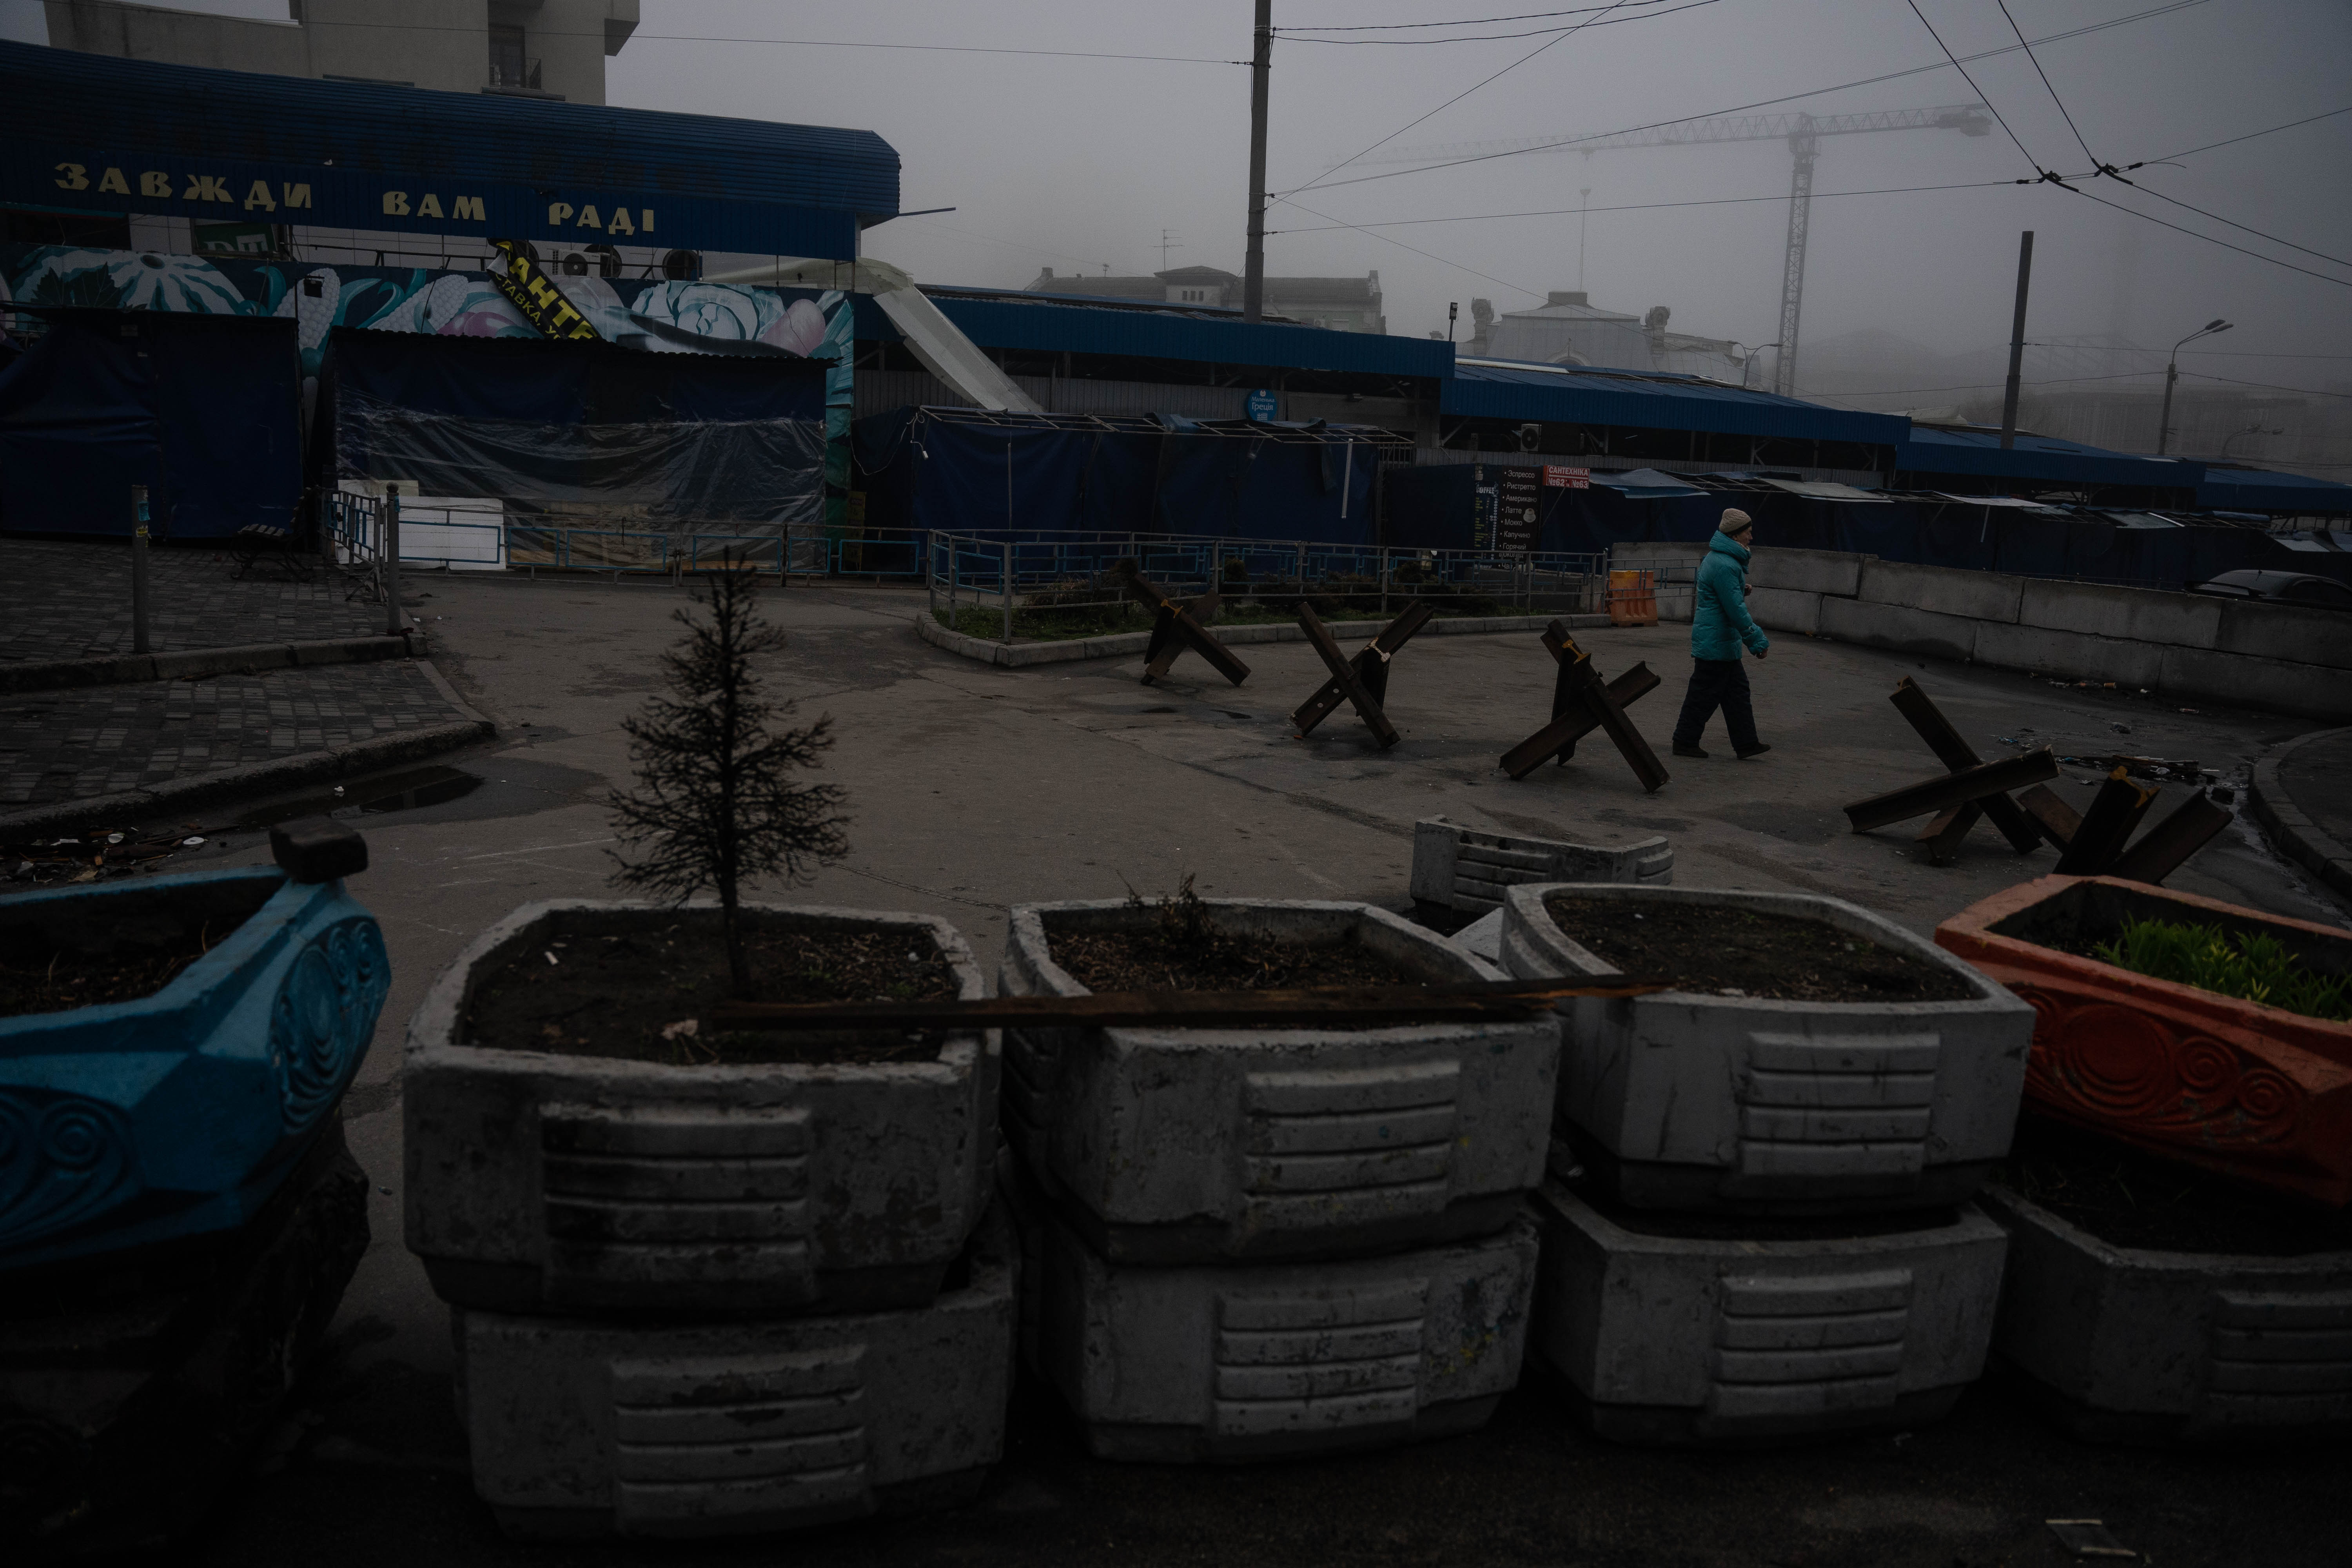 En Kyiv la situación pareciera se mas alentadora, hay un tímido regreso a la cotidianidad, donde sus habitantes hacen el intento de continuar sus vidas como pueden entre retenes y fachadas destruidas.